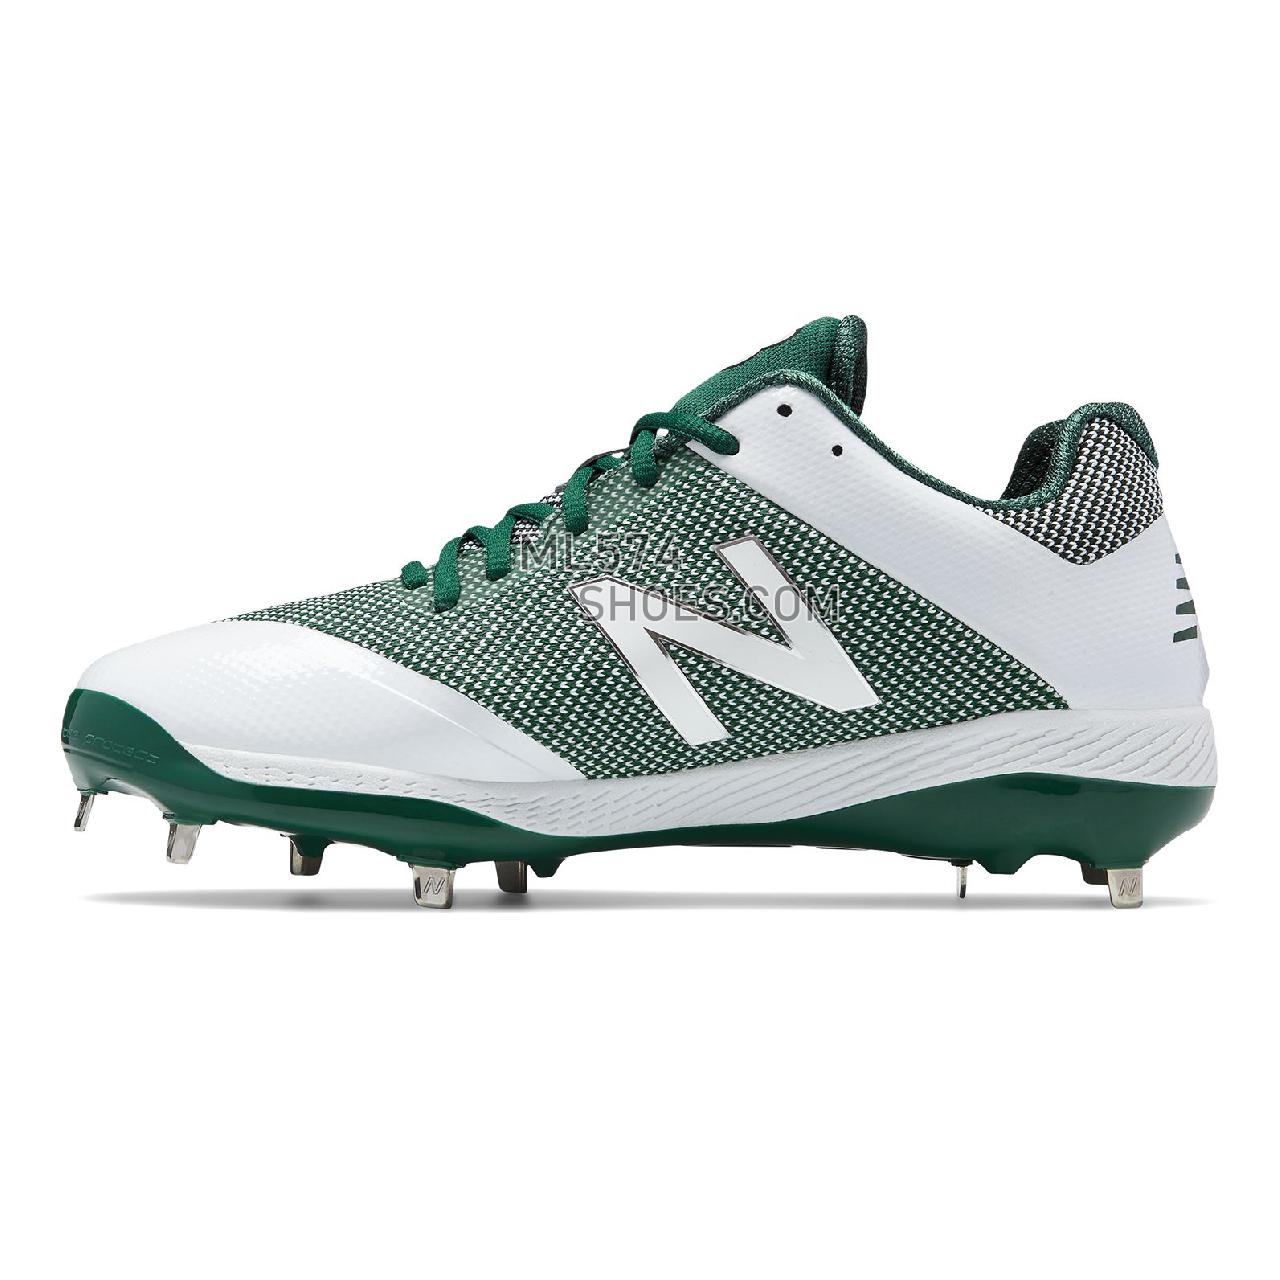 New Balance 4040v4 - Men's 4040 - Baseball Green with White - L4040TG4